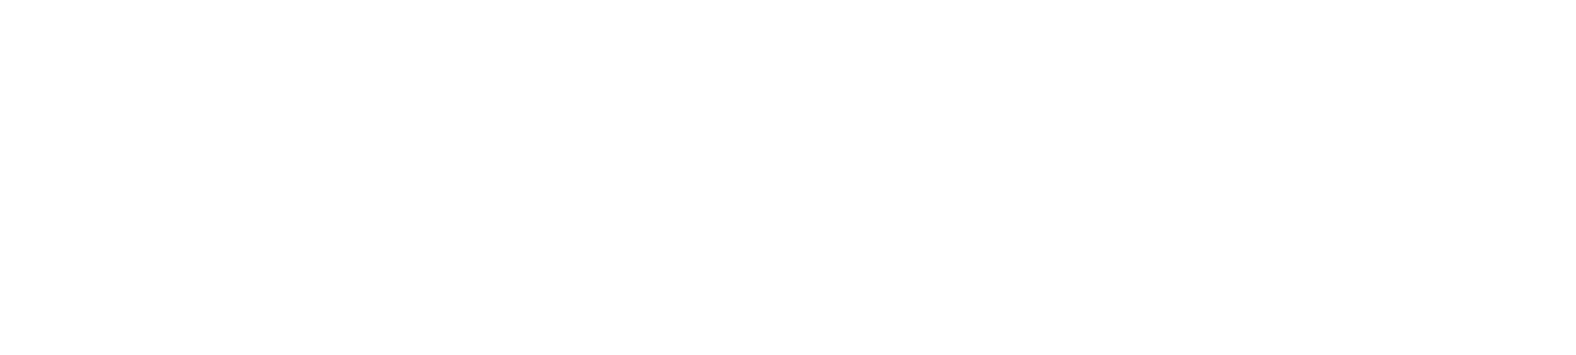 Docebo logo large for dark backgrounds (transparent PNG)